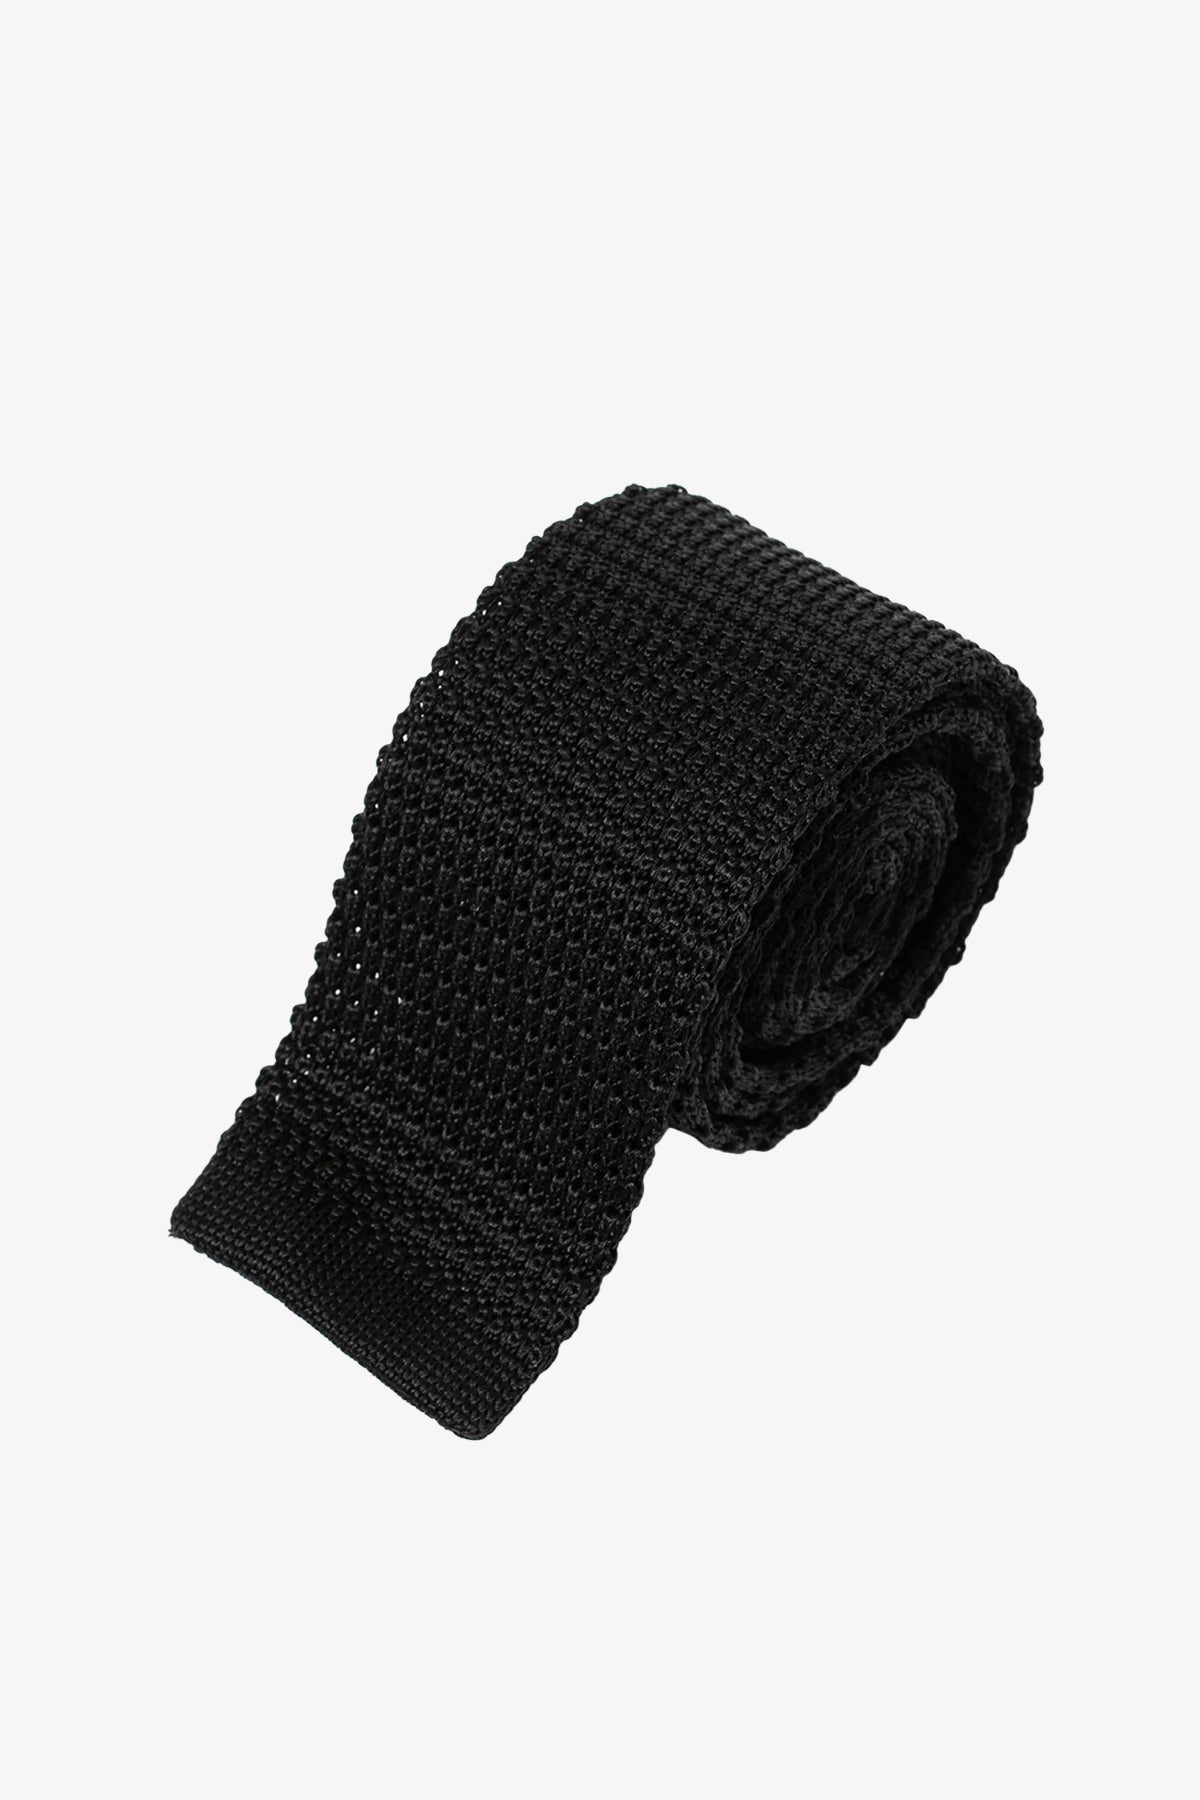 Silk Knitted Tie - Black